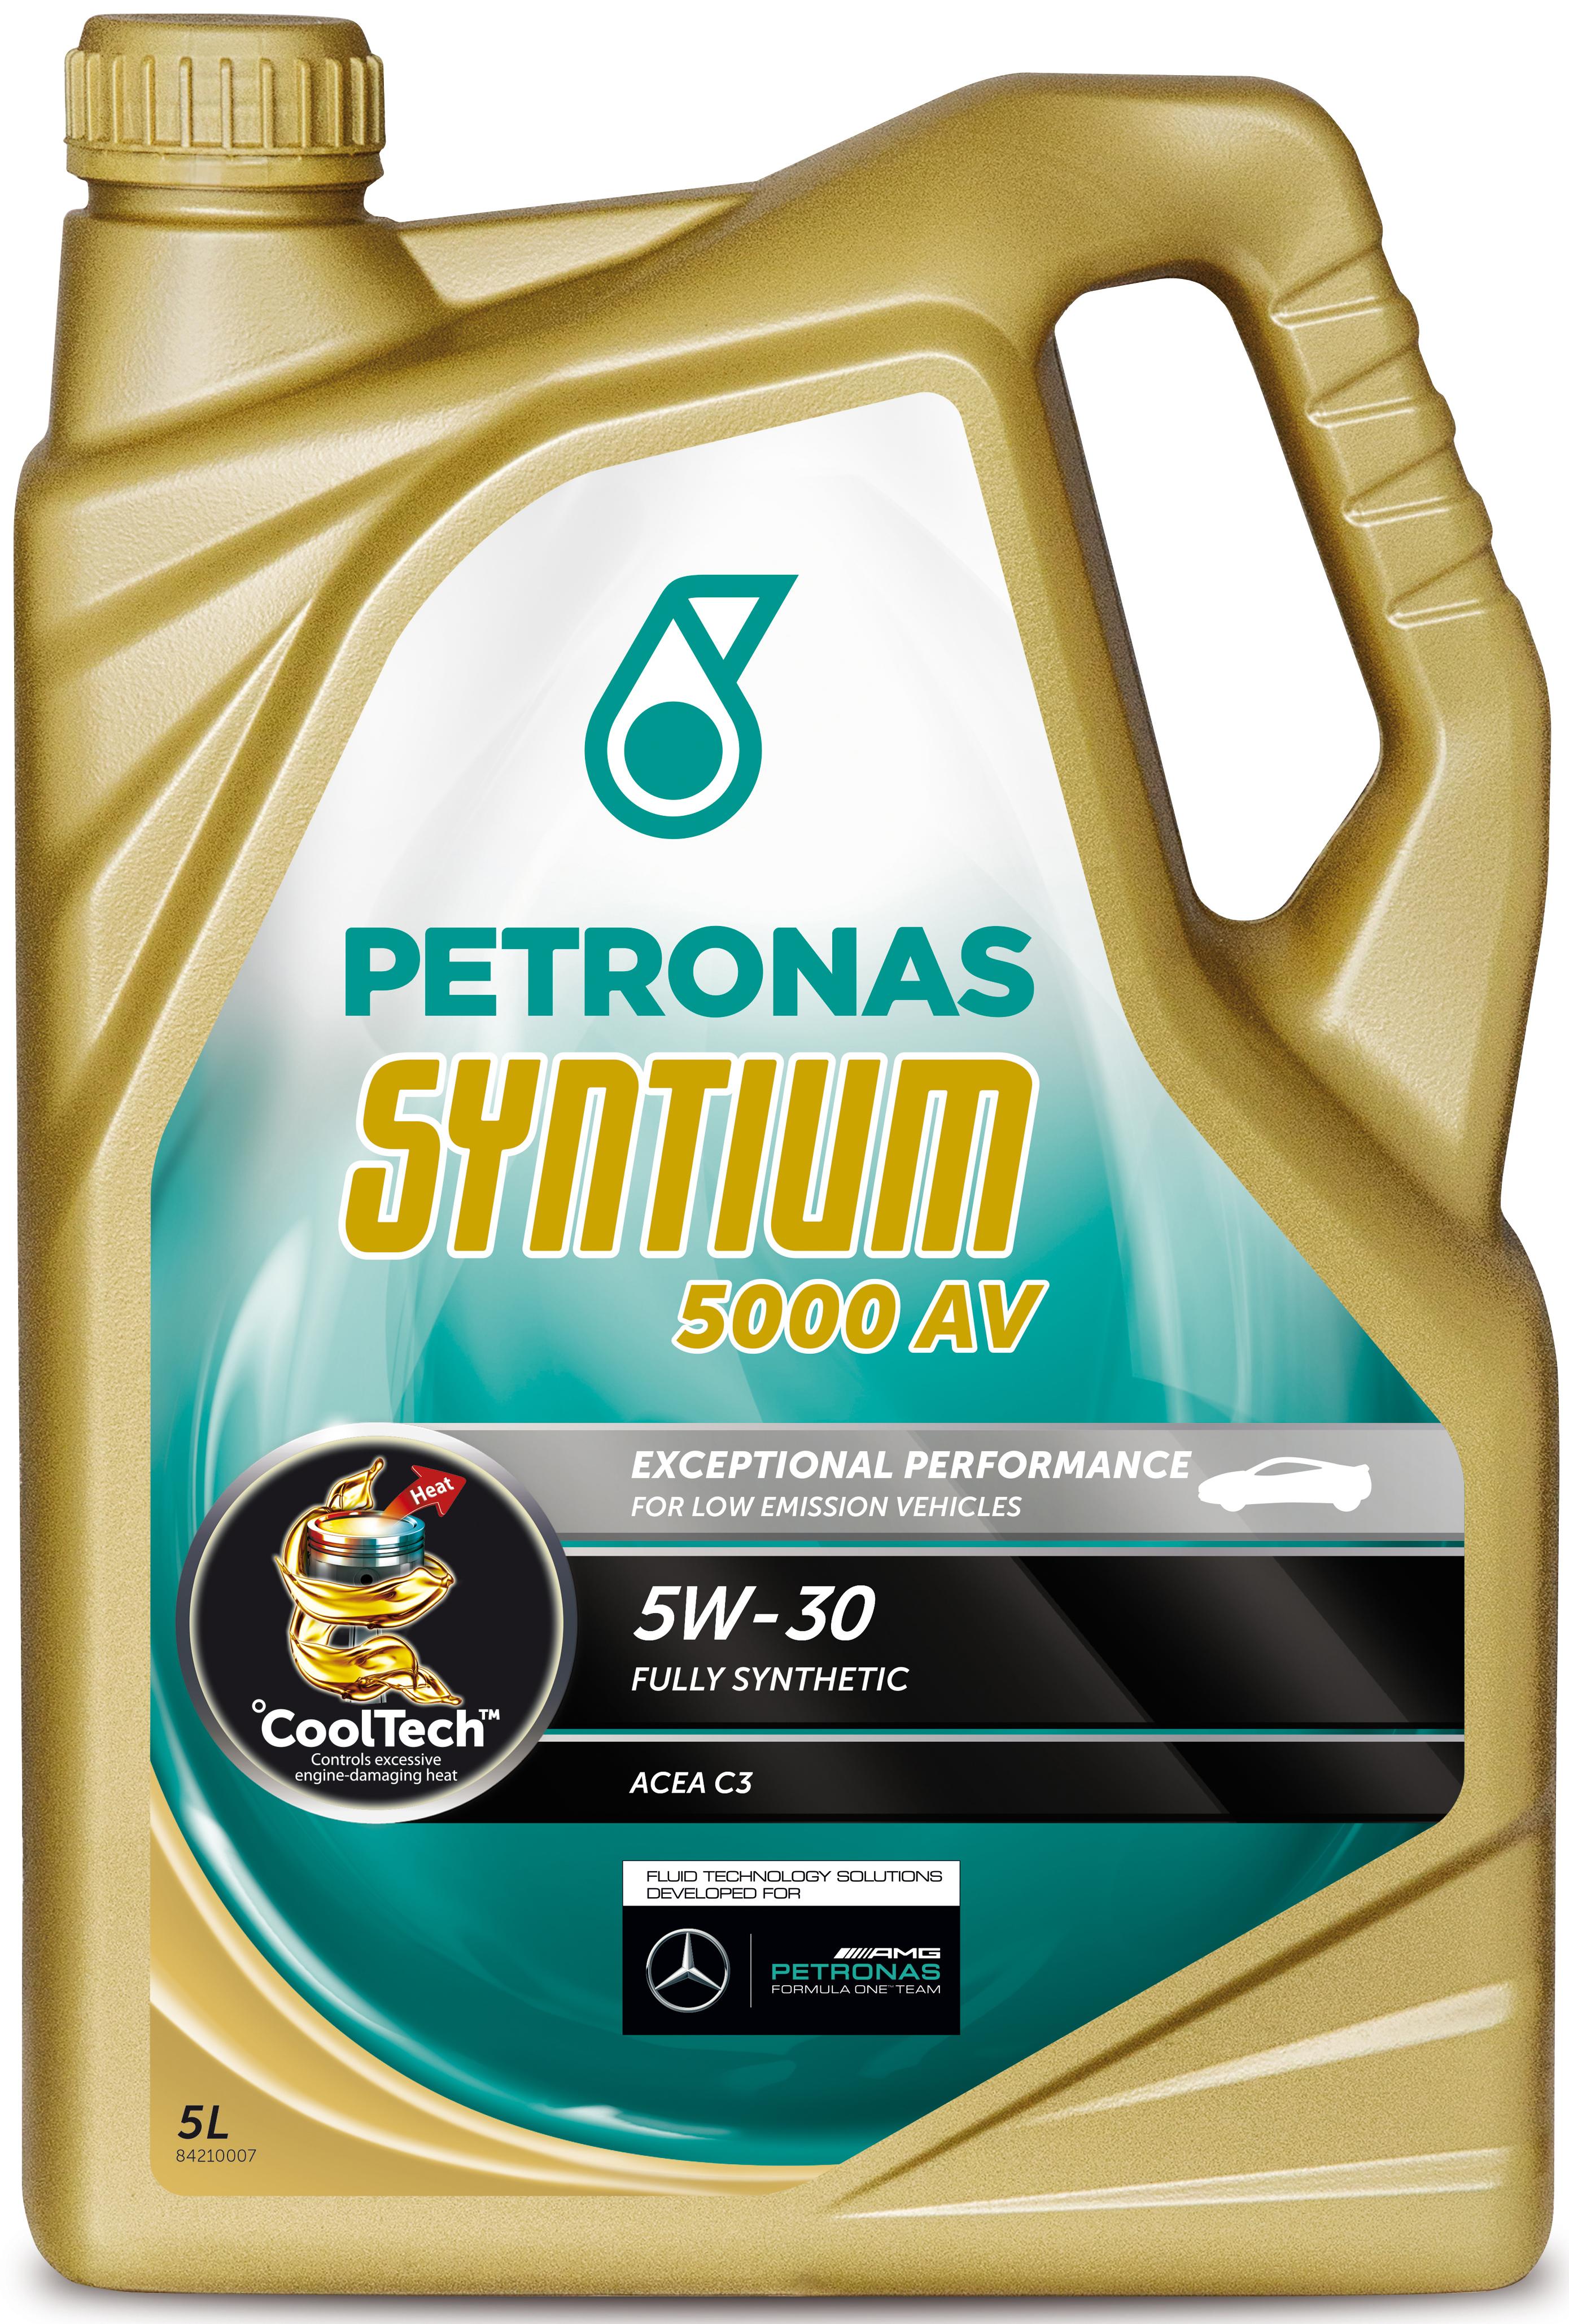 Petronas Syntium 5000 Av 5W-30 Oil 5L